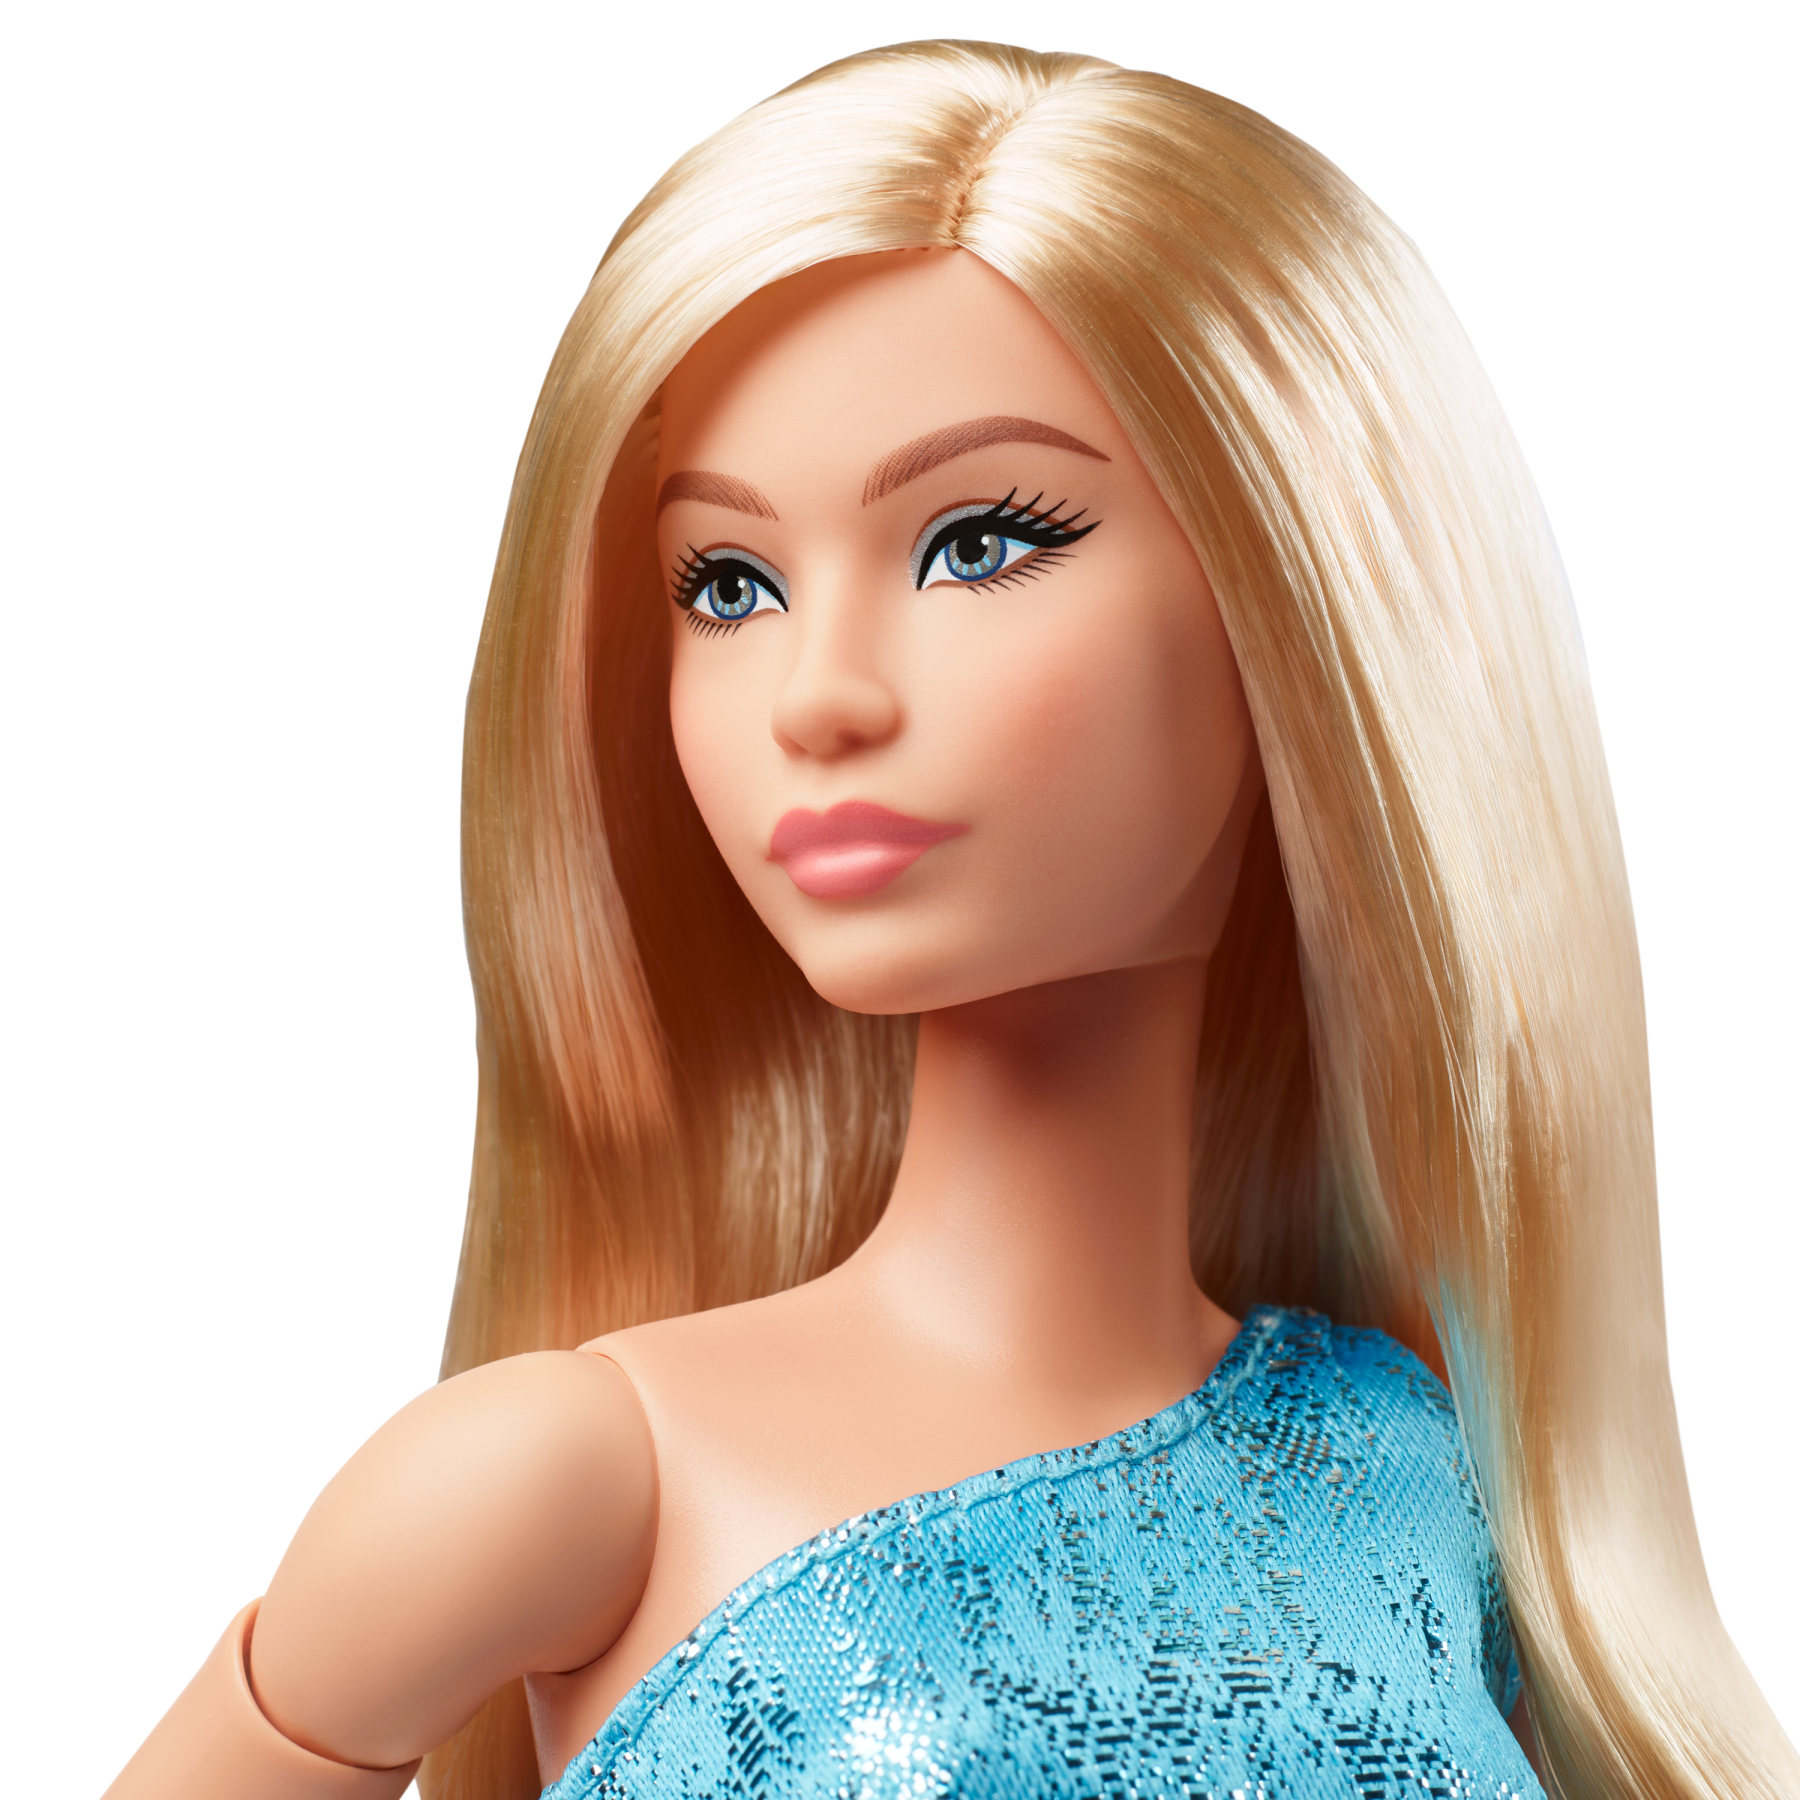 Barbie looks - bambola da collezione n. 23, barbie con capelli biondo cenere e look moderno anni 2000, abito blu monospalla e tacchi con laccetti - Barbie